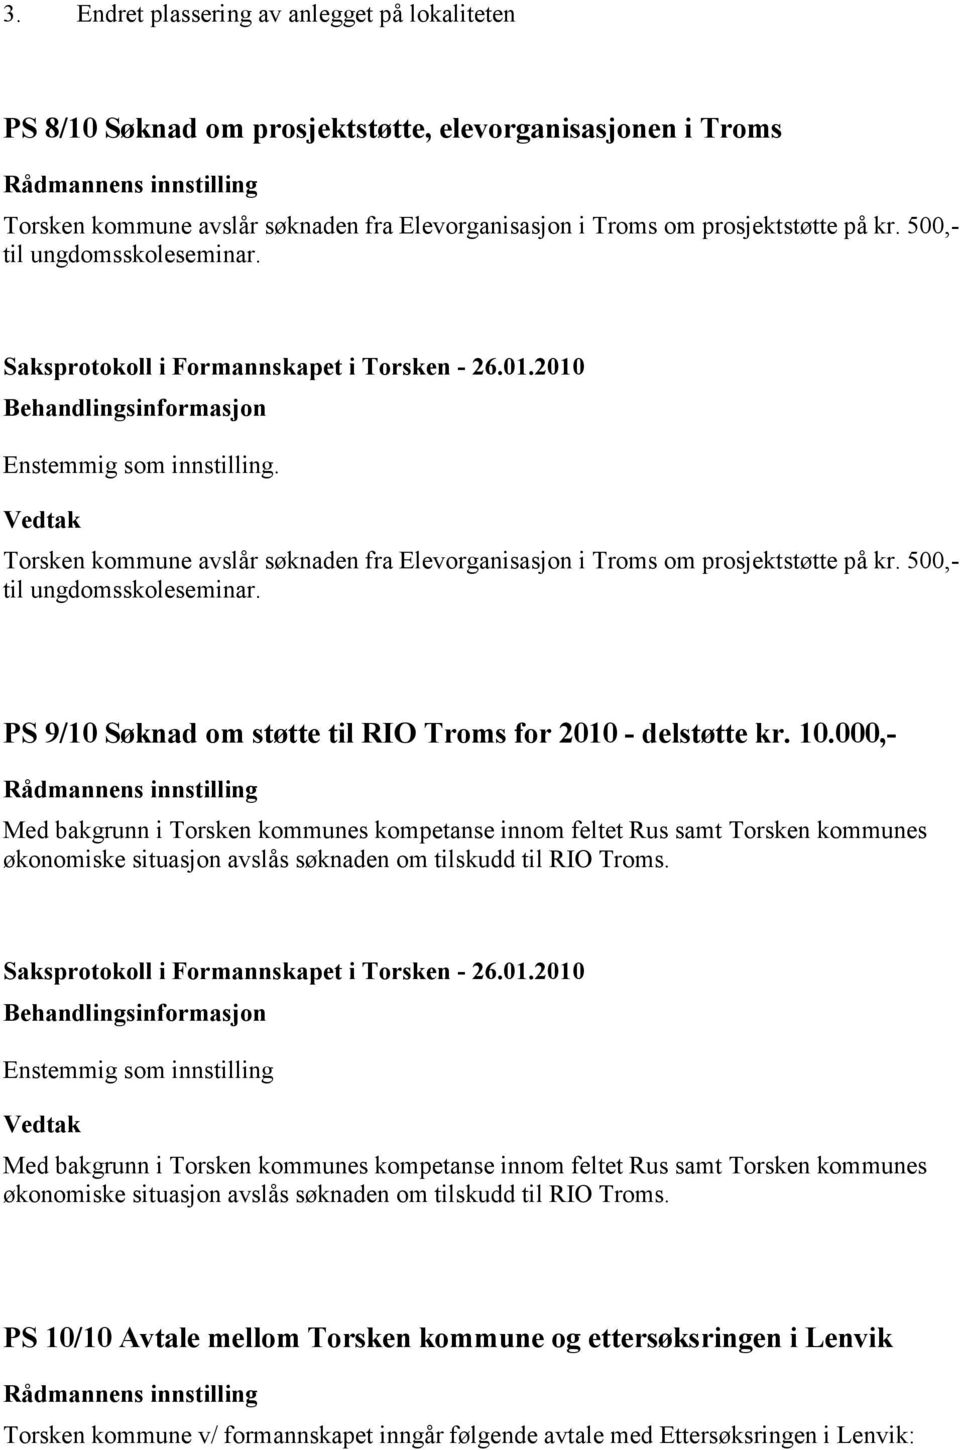 PS 9/10 Søknad om støtte til RIO Troms for 2010 - delstøtte kr. 10.